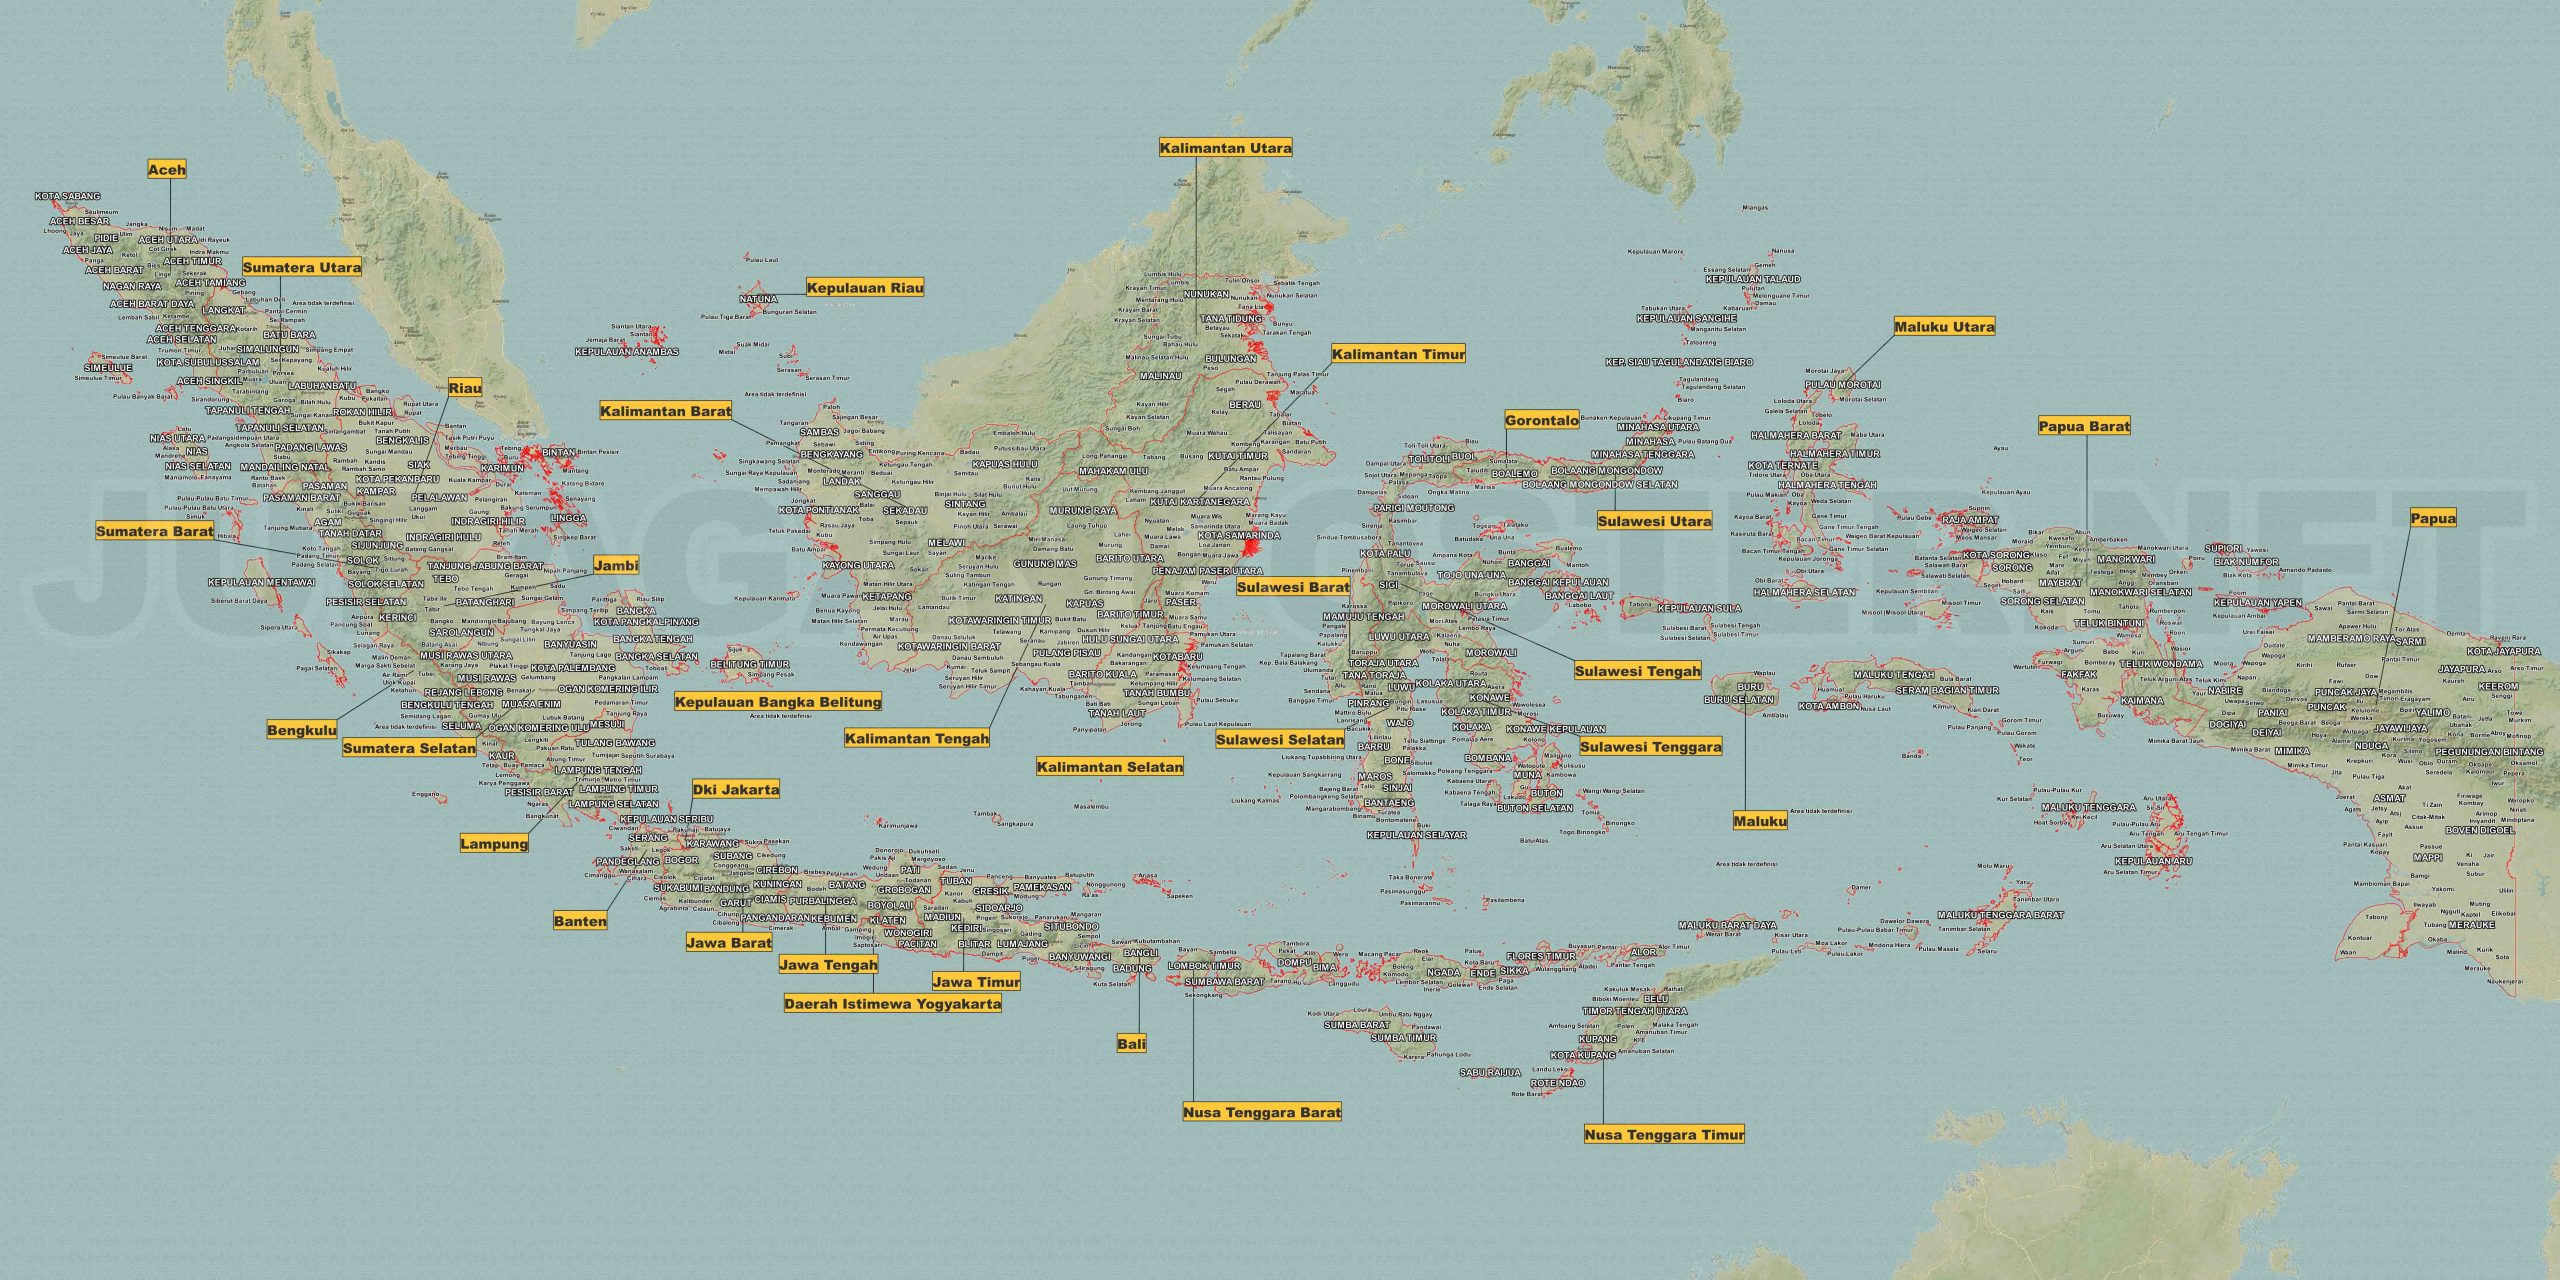 Peta Indonesia Aesthetic: Estetika dalam Peta Nusantara